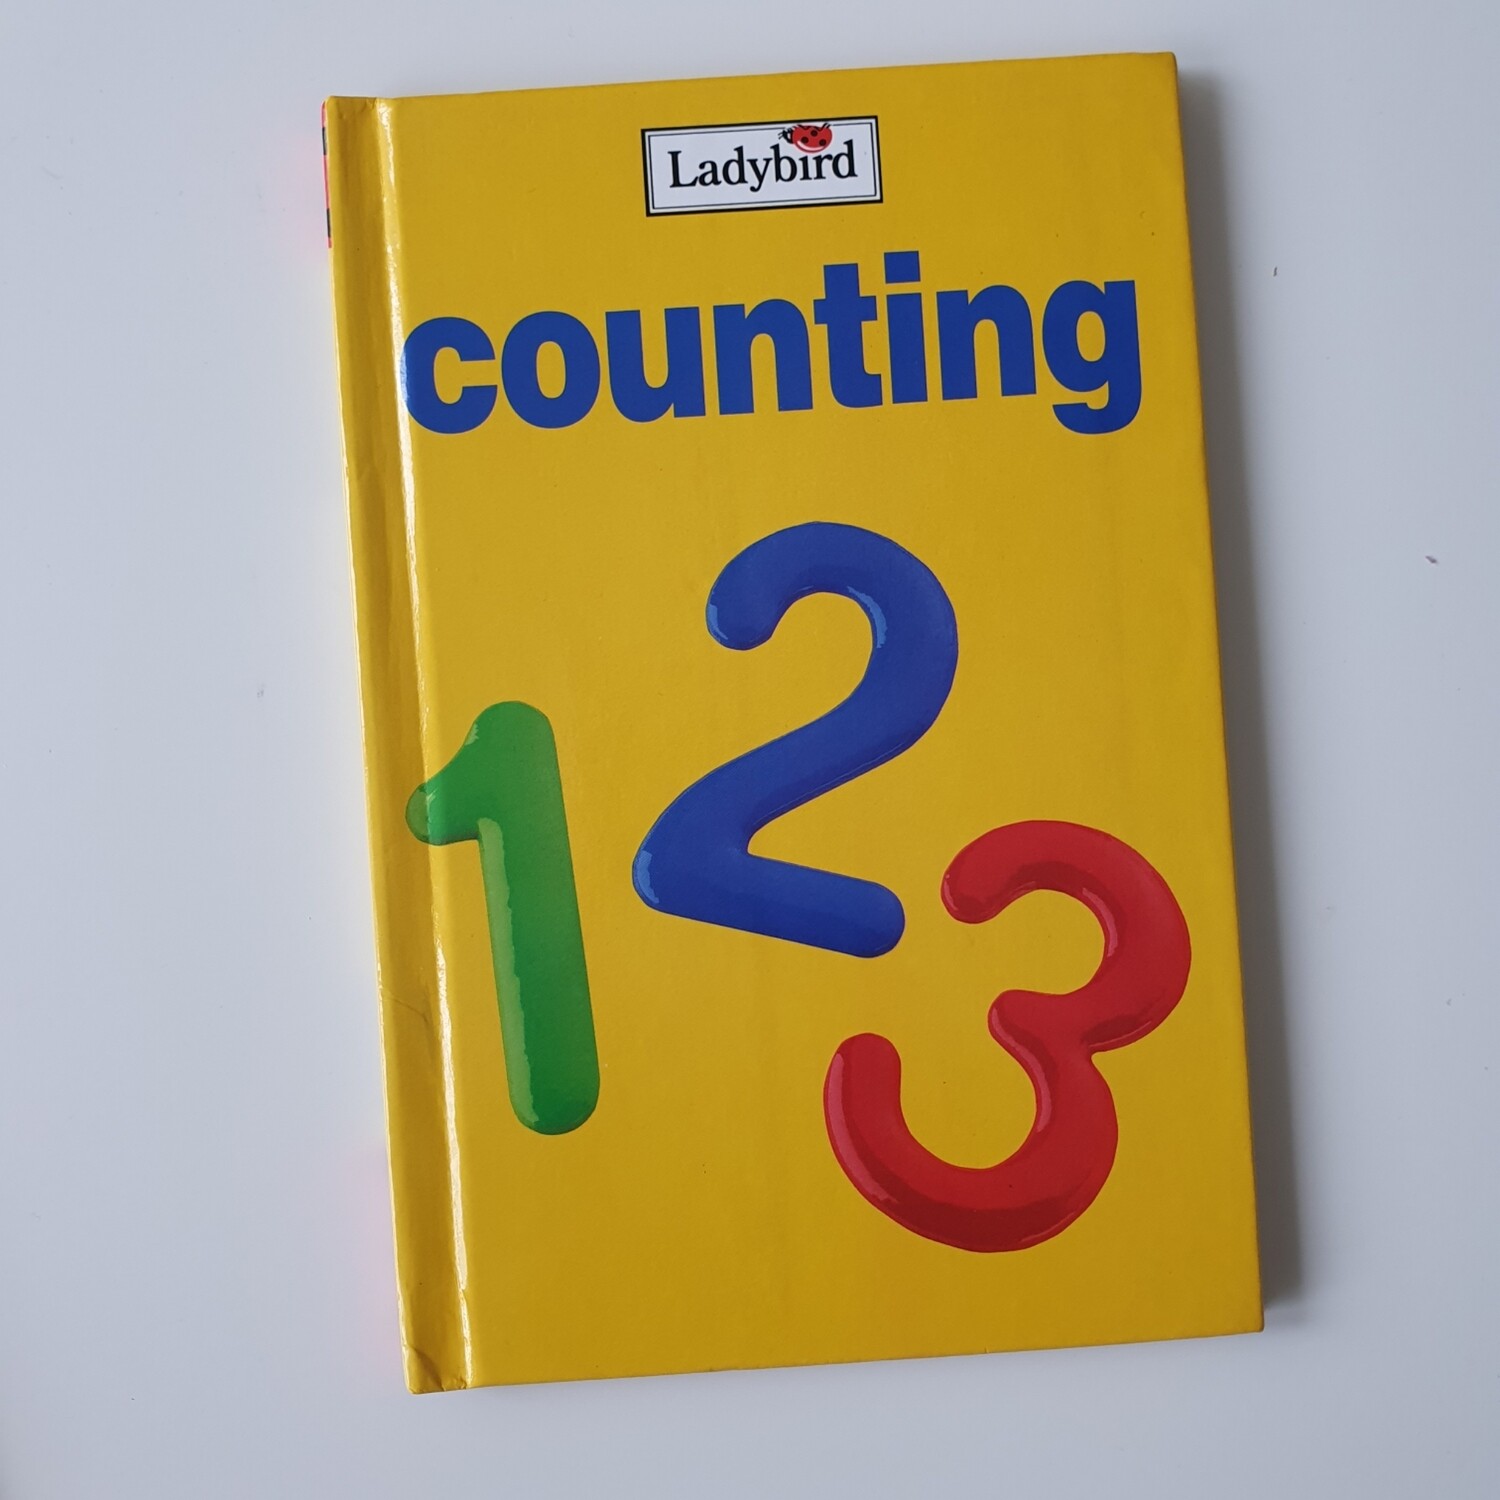 Counting - Ladybird Book, maths, teacher